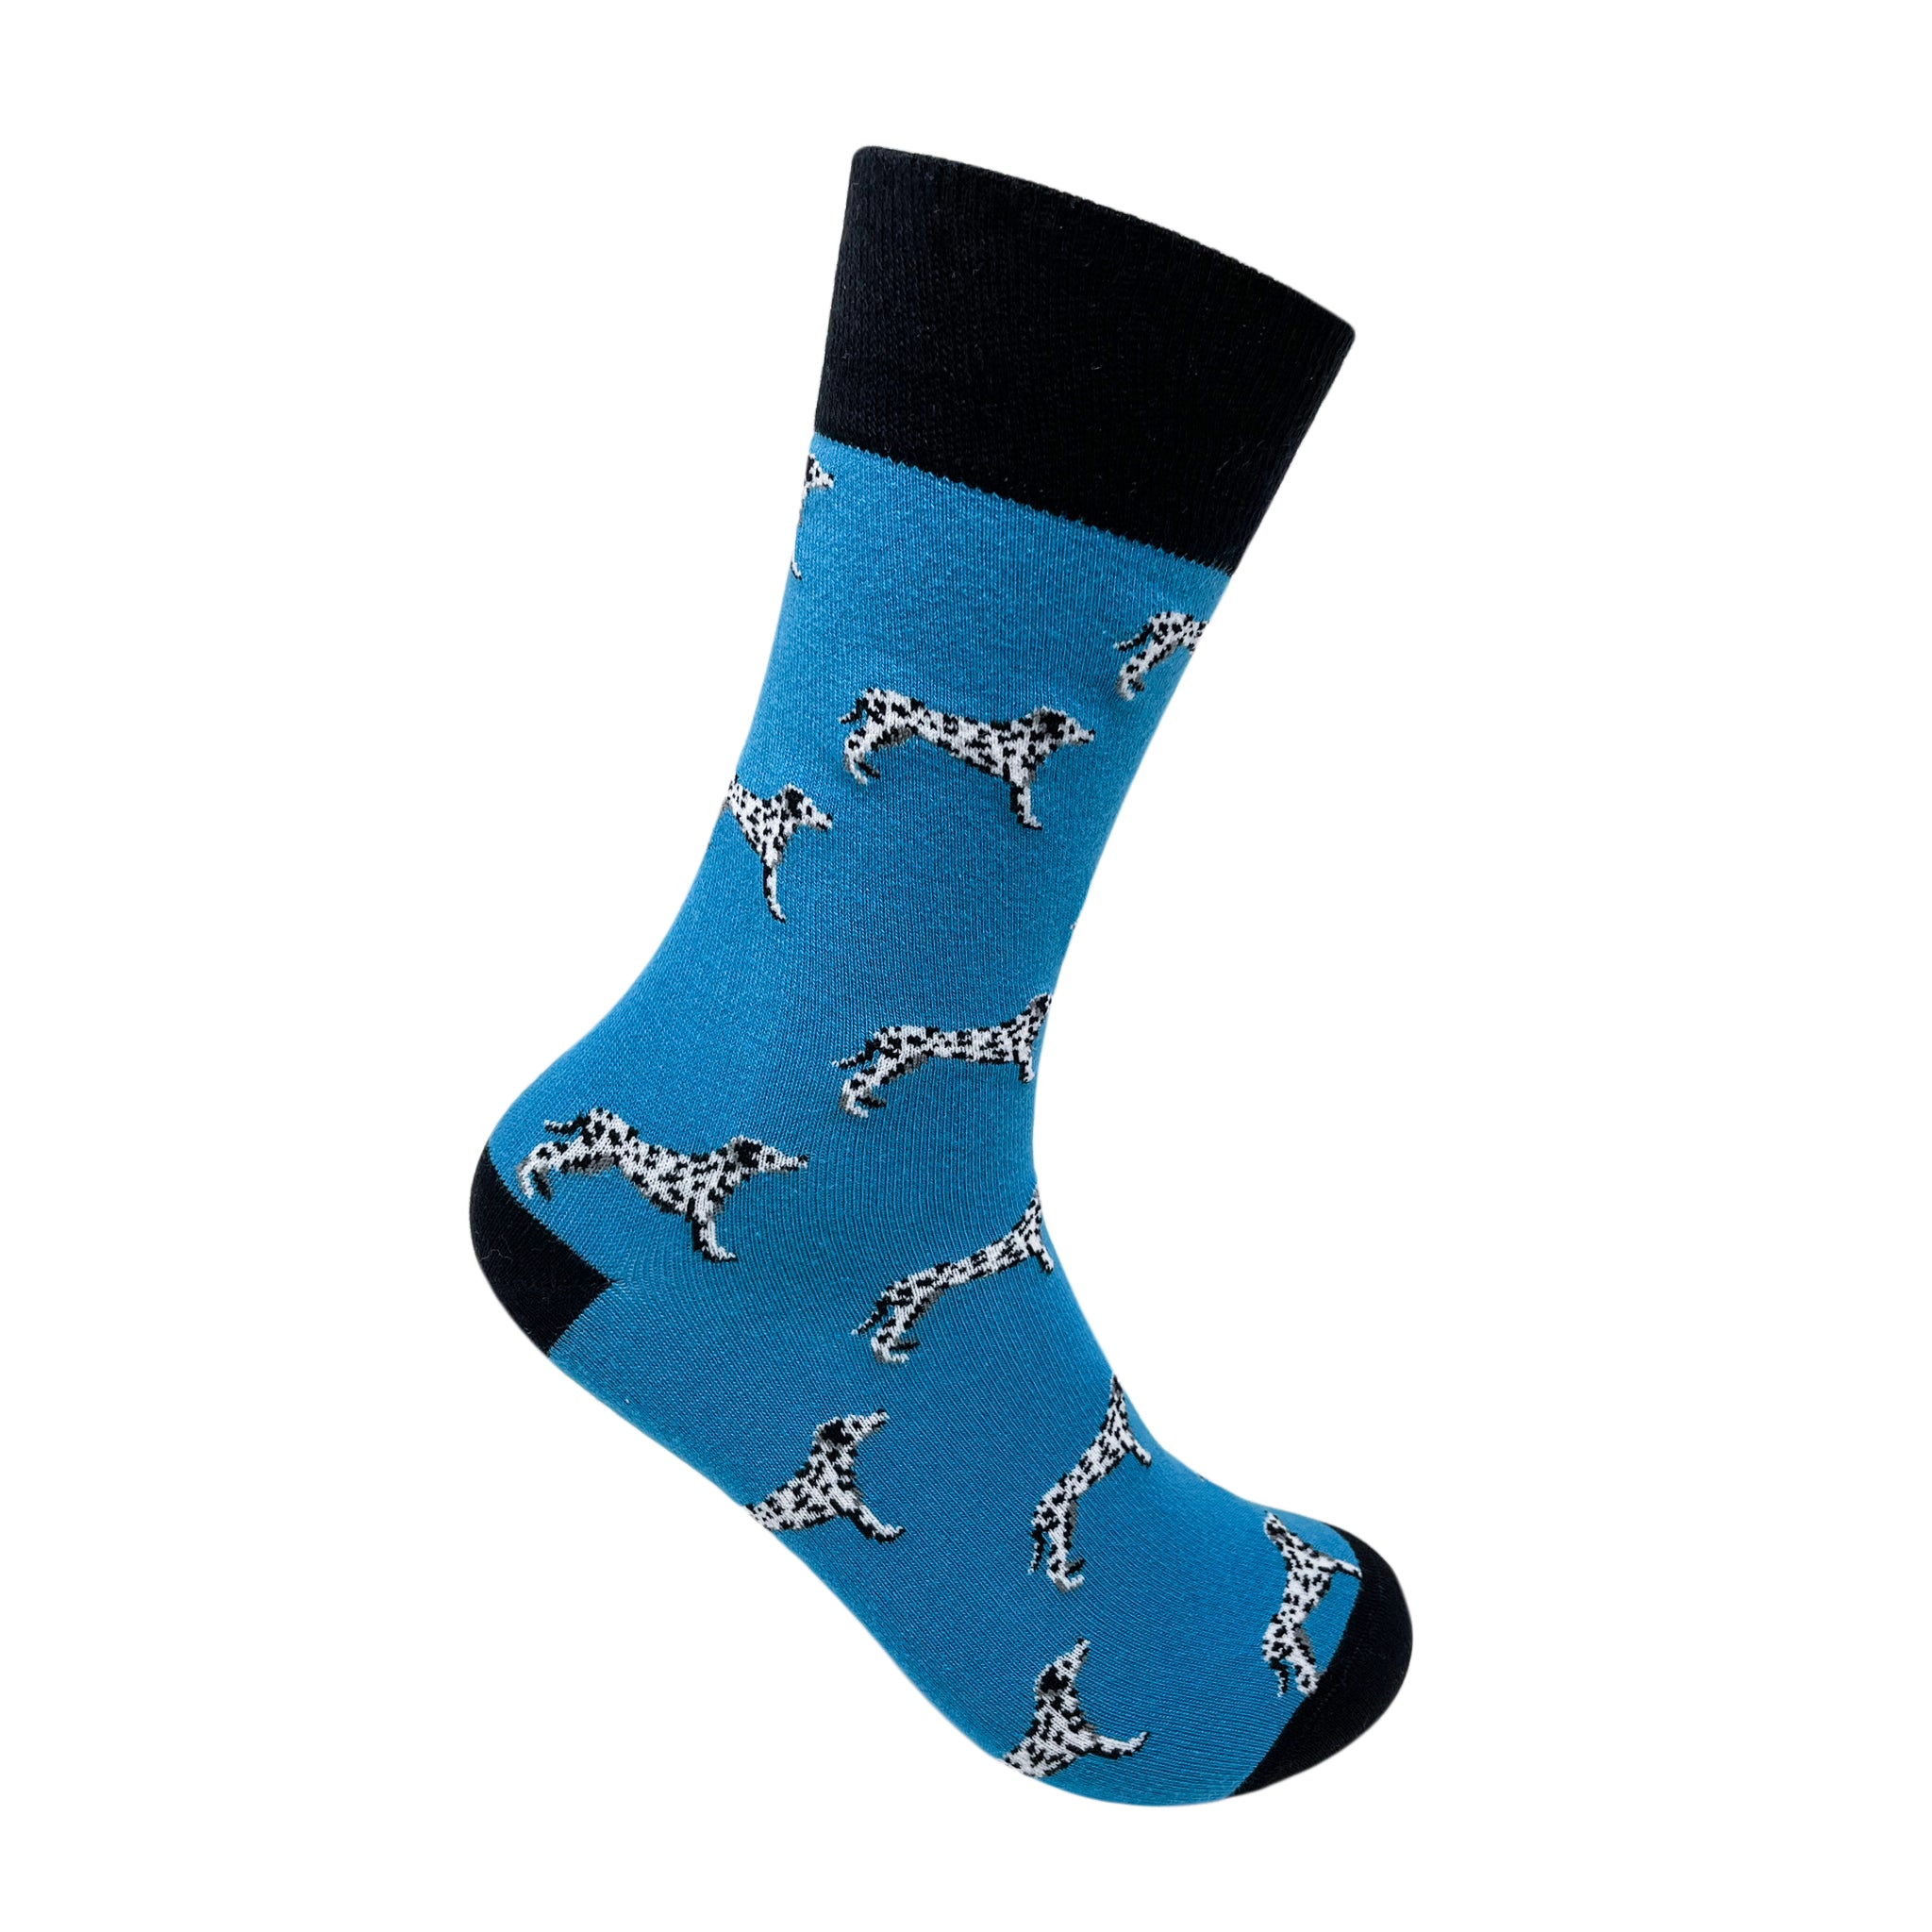 Dalmatian Socks For Men